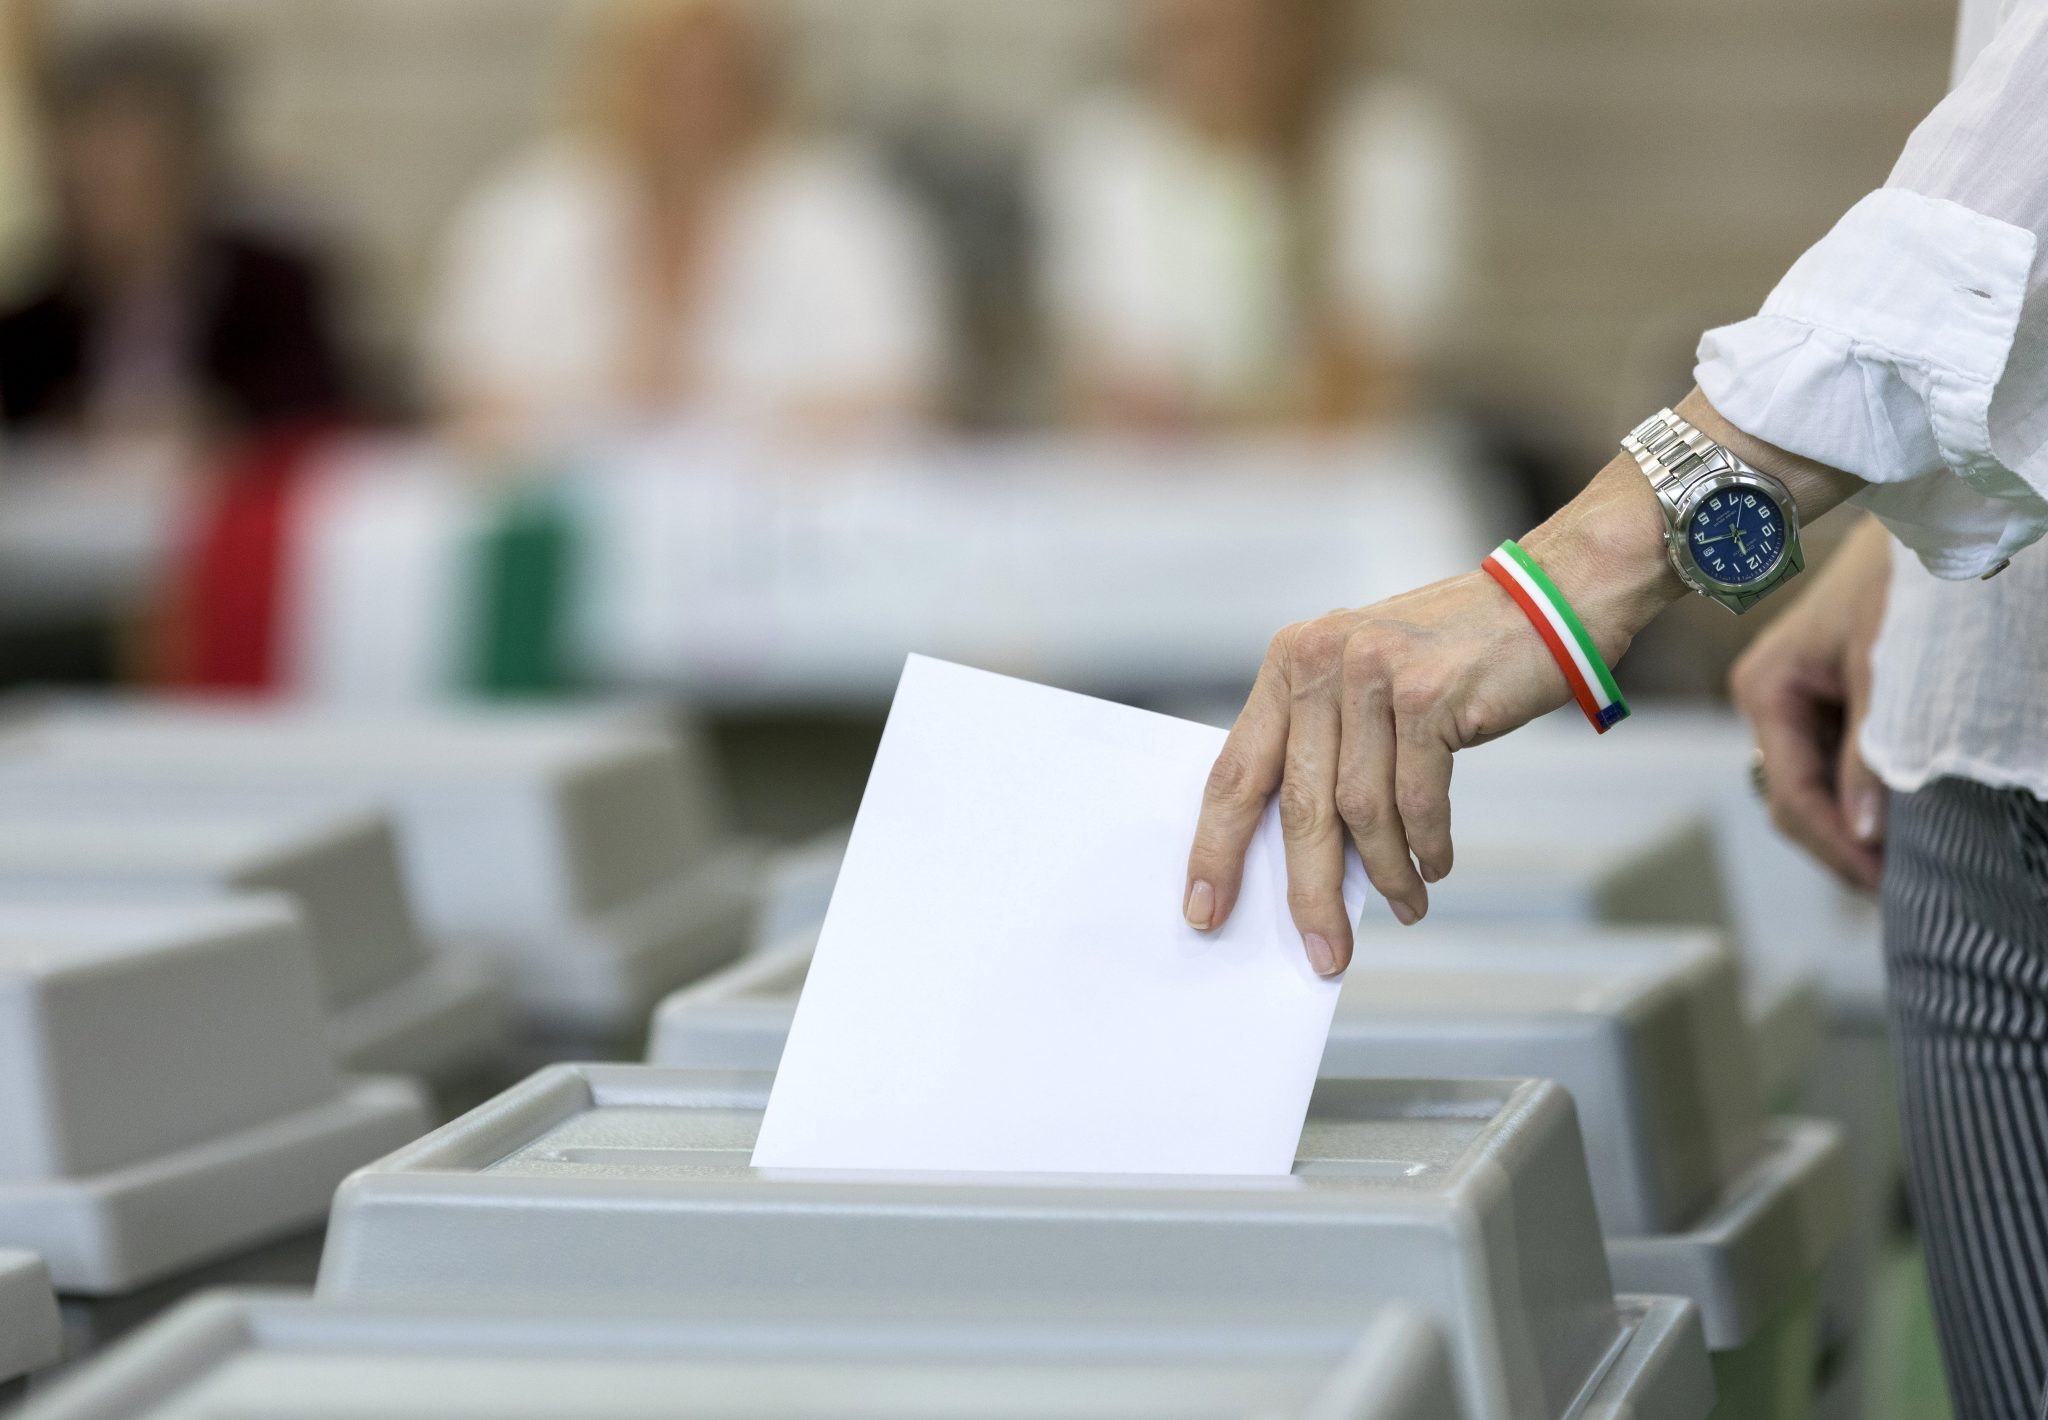 OSZE entsendet umfassende Wahlbeobachtungsmission nach Ungarn